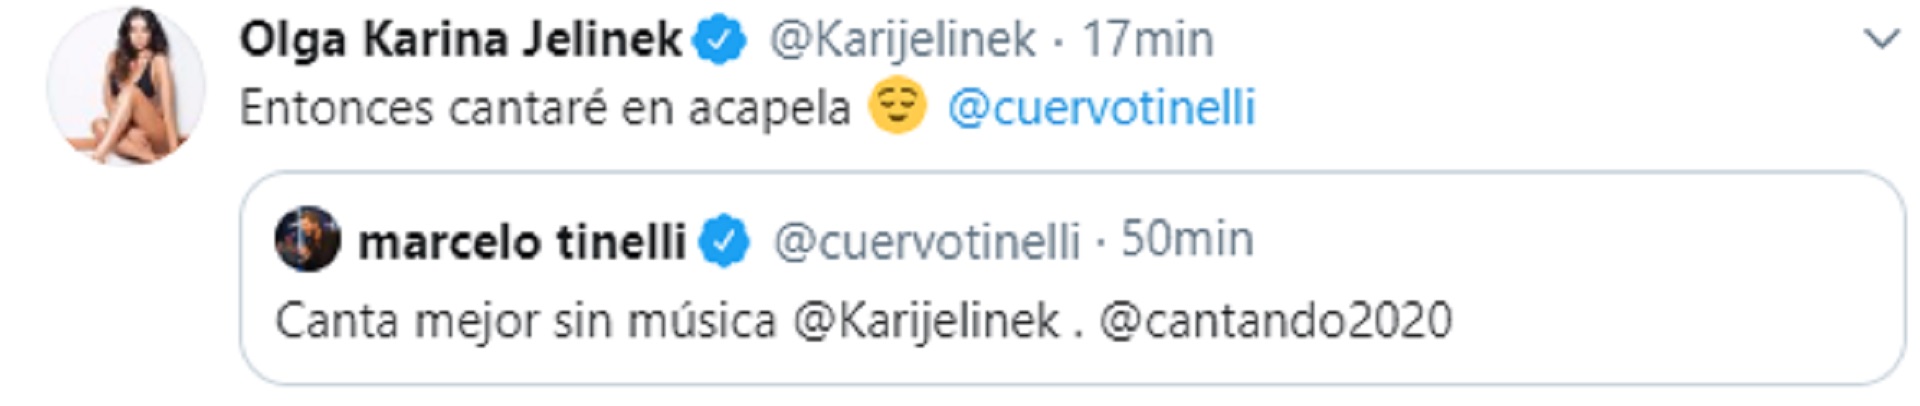 La respuesta de Karina Jelinek al mensaje de Marcelo Tinelli